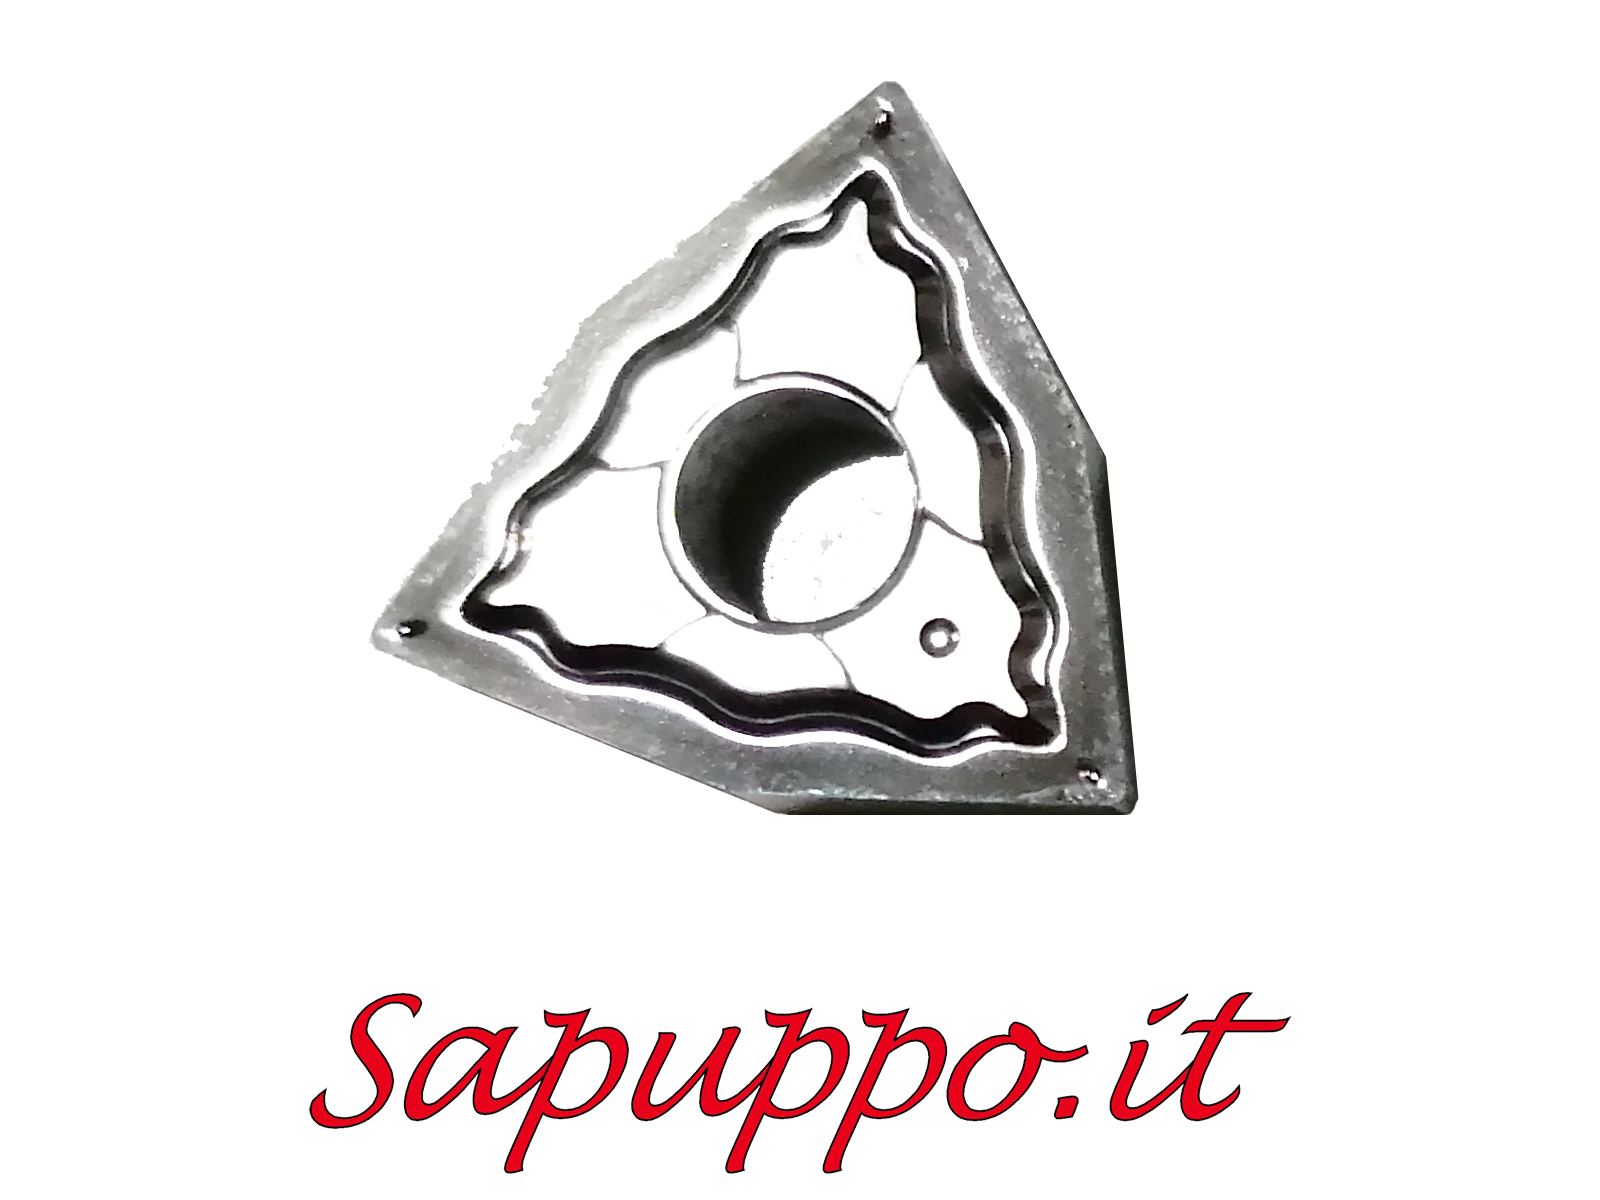 Inserto WNGG 080404-LH AD810 per alluminio | Sapuppo.it - Utensileria